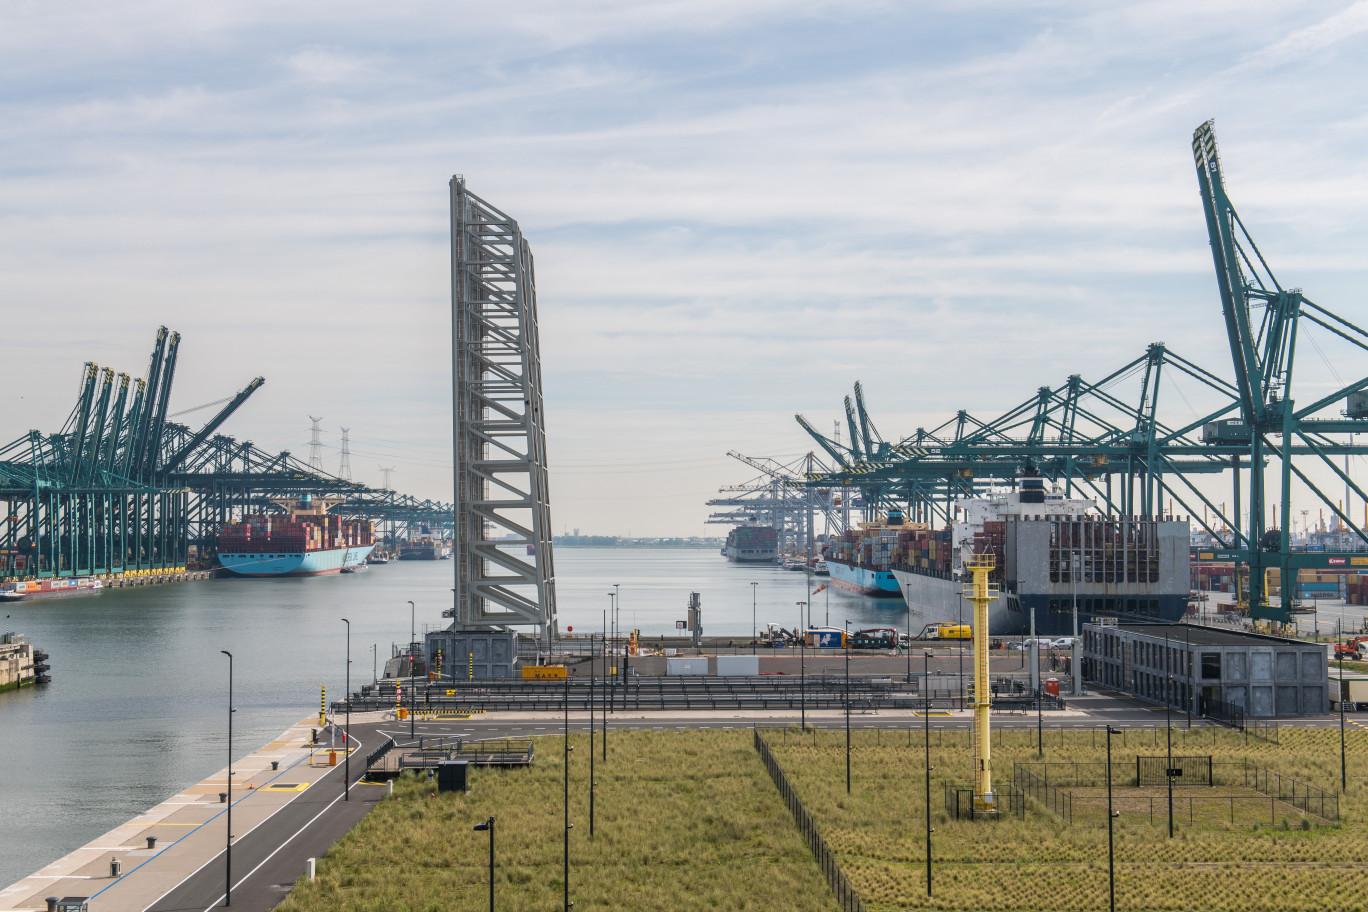 Les deux ports veulent profiter de cette fusion pour passer le cap environnemental. © DR)